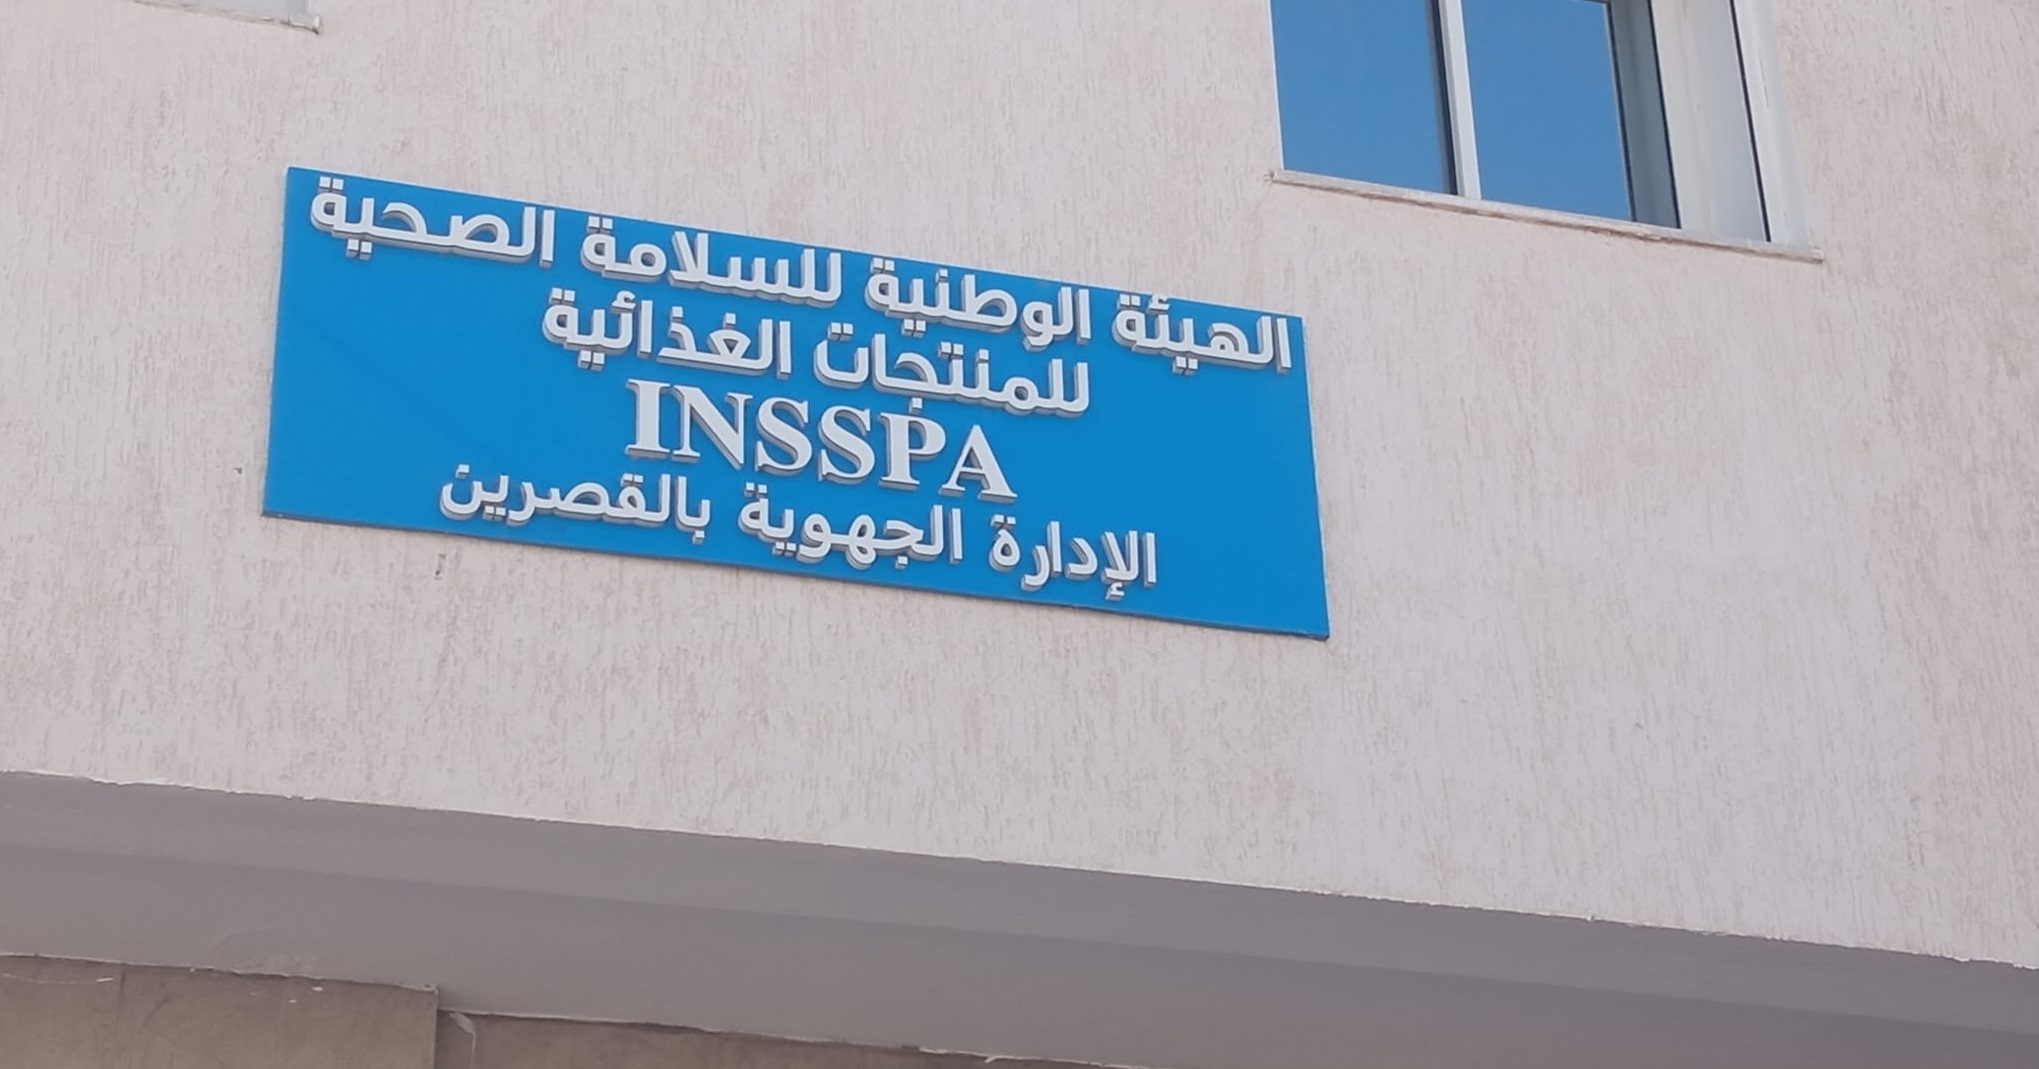 لهيئة الوطنية للسلامة الصحية للمنتوجات الغذا ئية بولاية القصرين